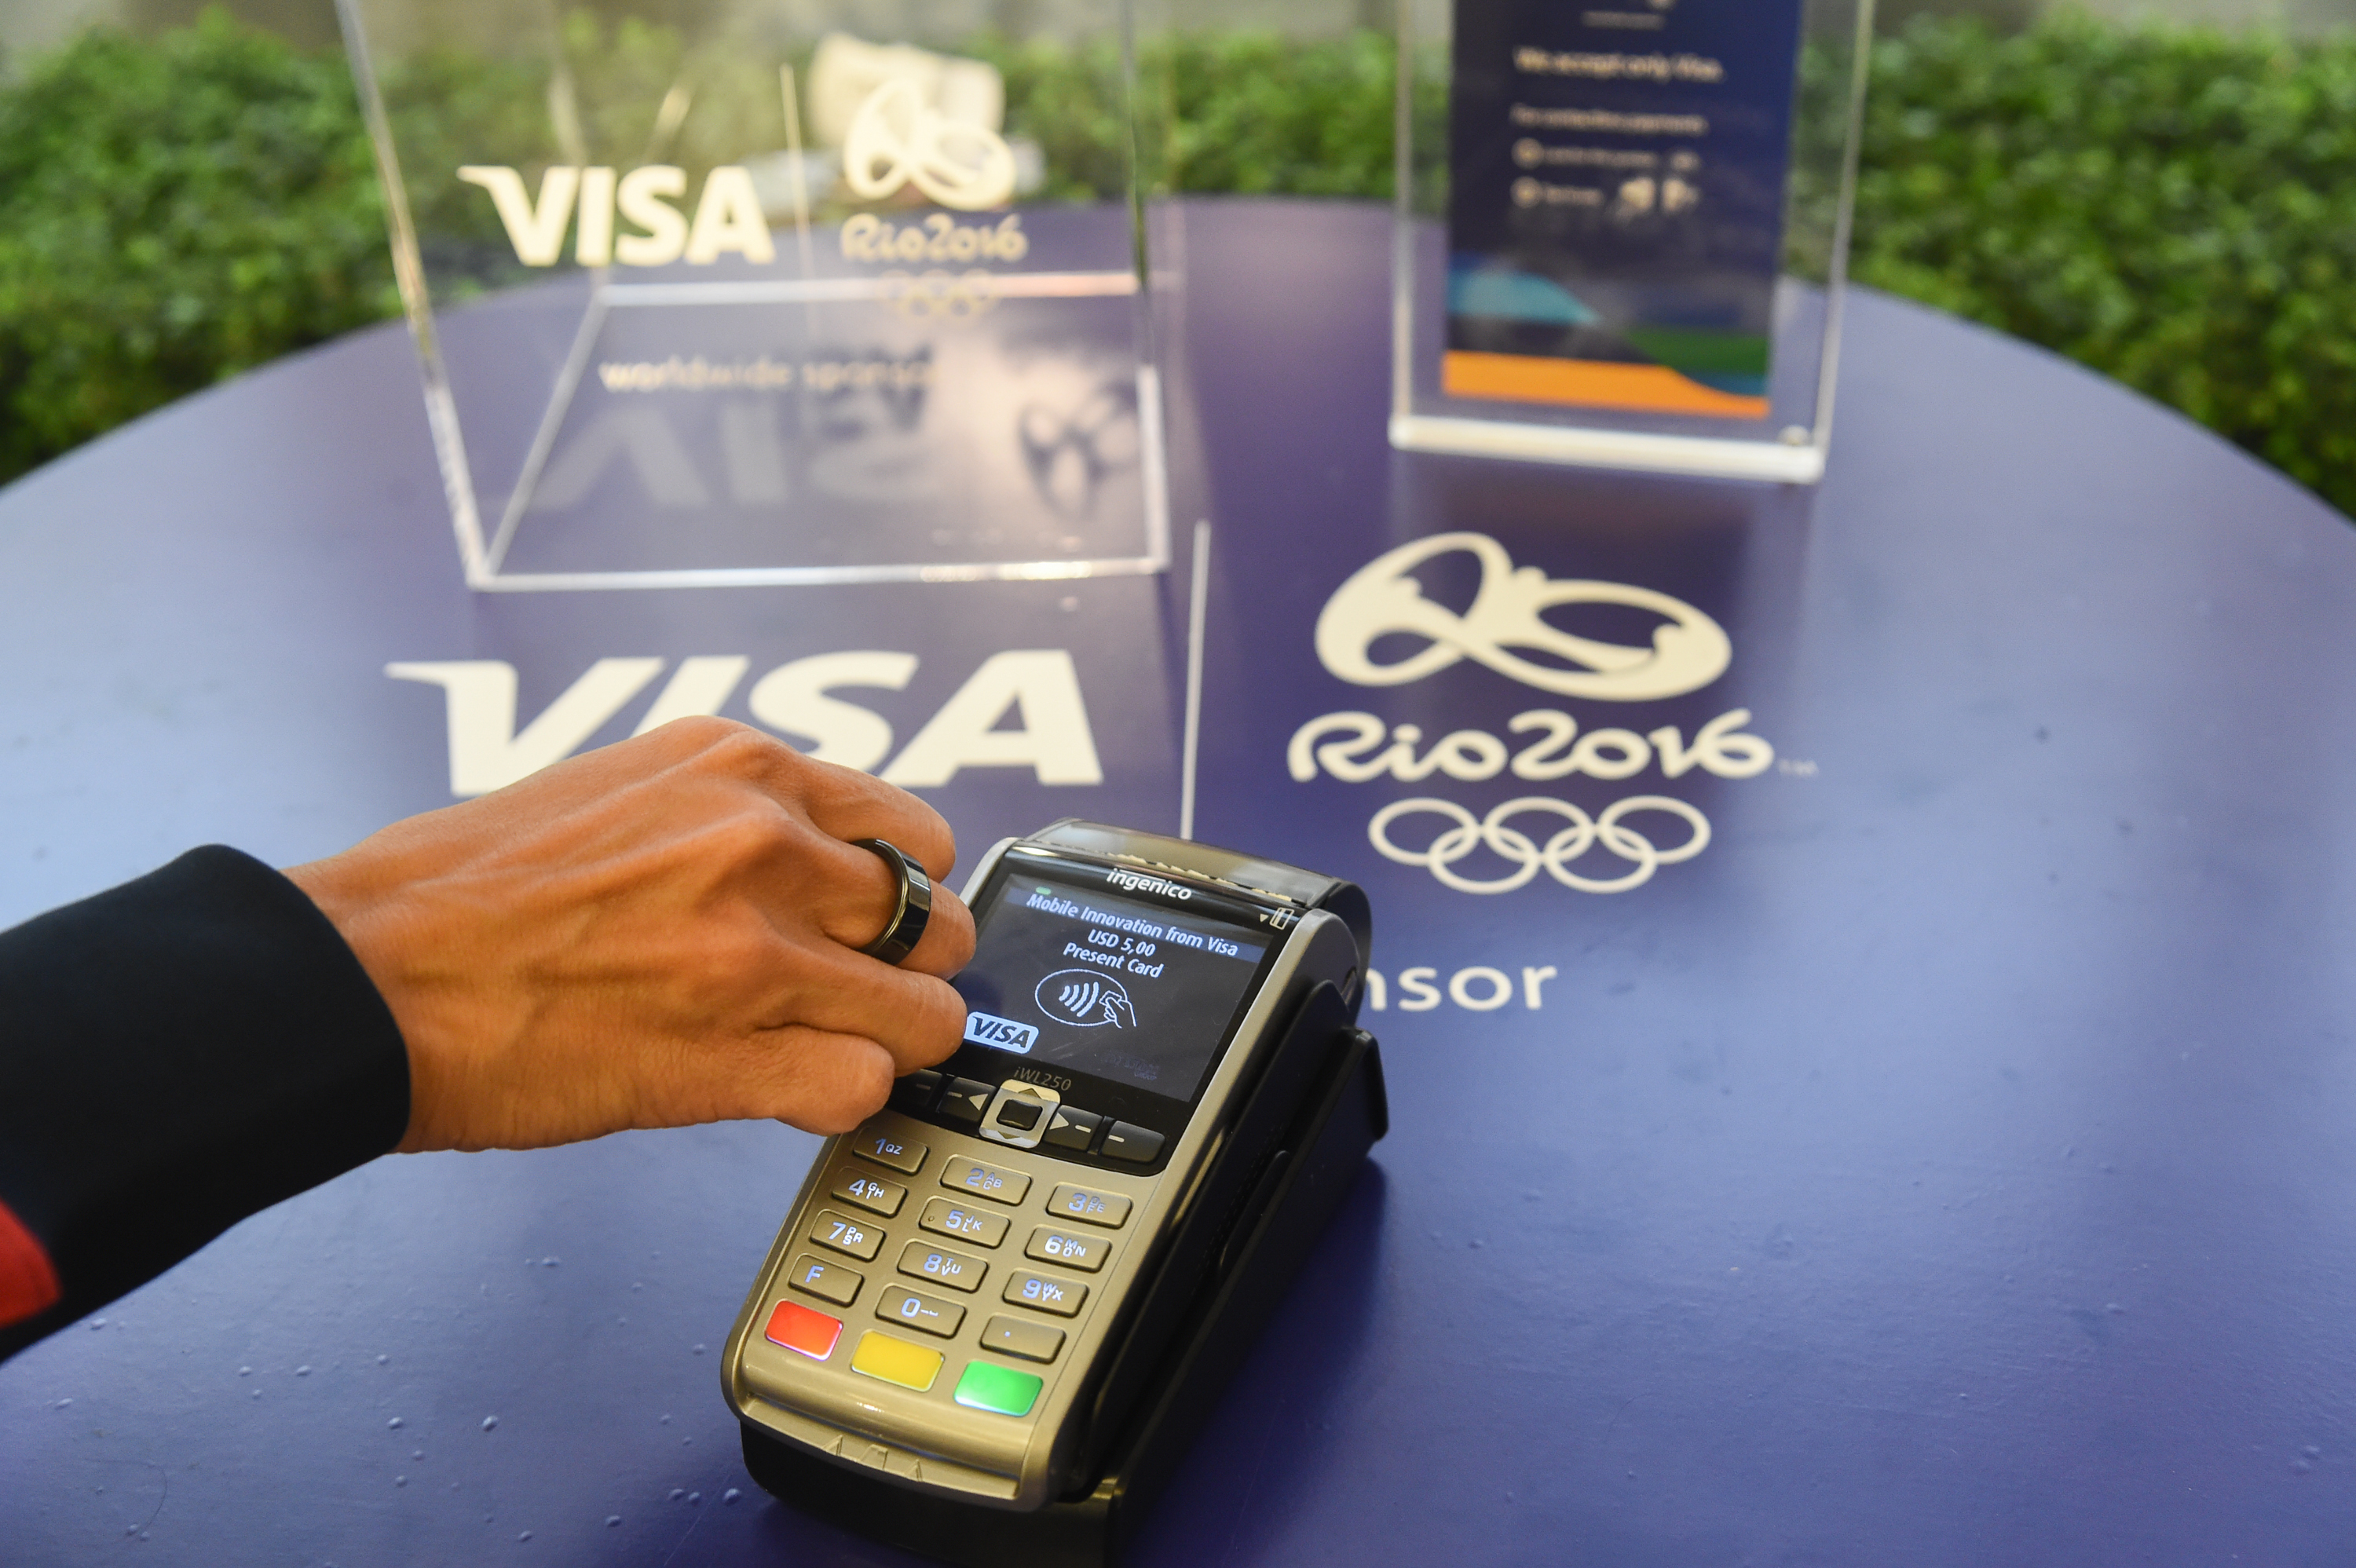 Visa lance la bague de paiement NFC pour les athlètes parrainés par  l'Équipe Visa, destinée à être utilisée aux Jeux olympiques de Rio 2016